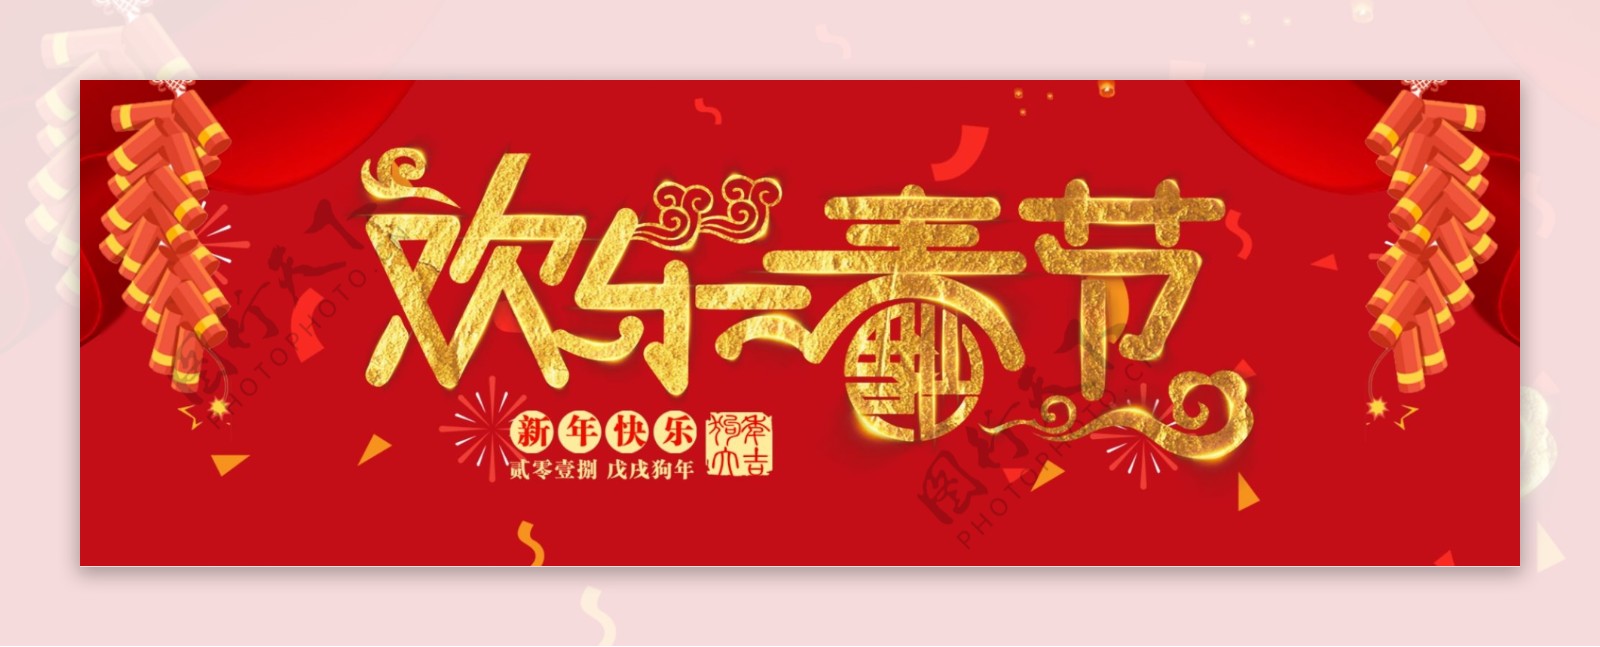 欢乐春节红色中国风喜庆电商促销海报